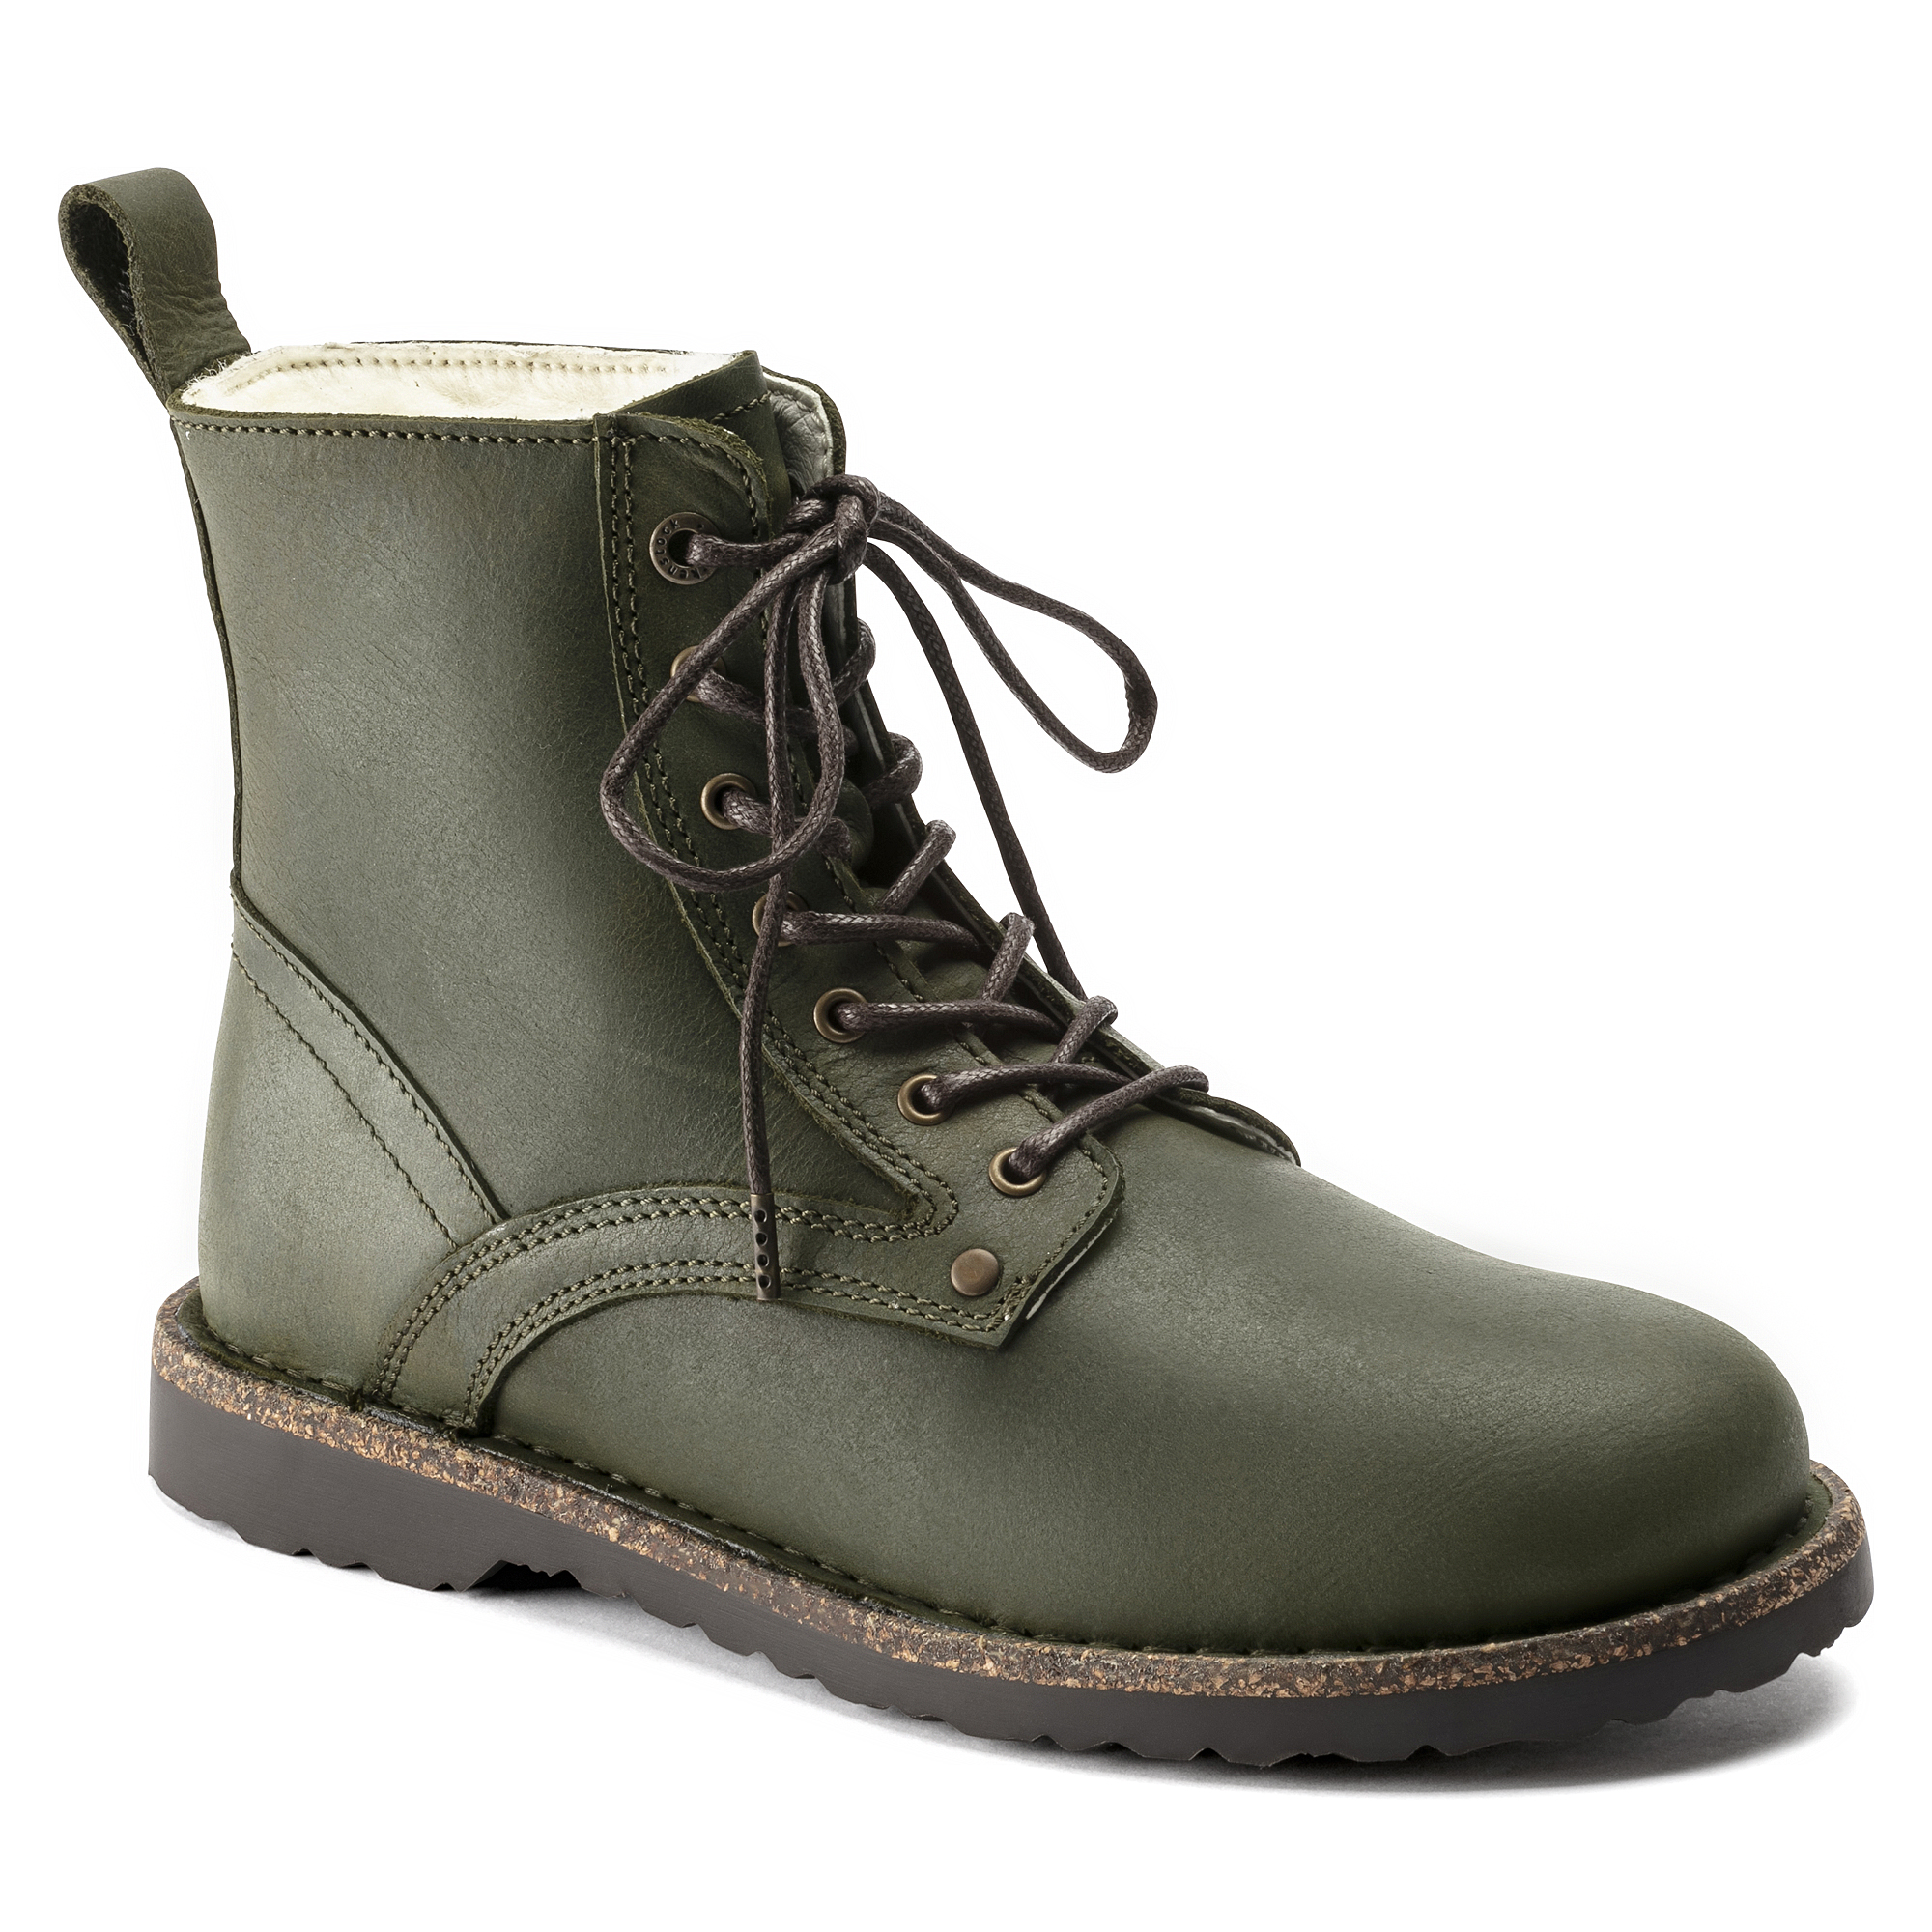 birkenstock combat boots